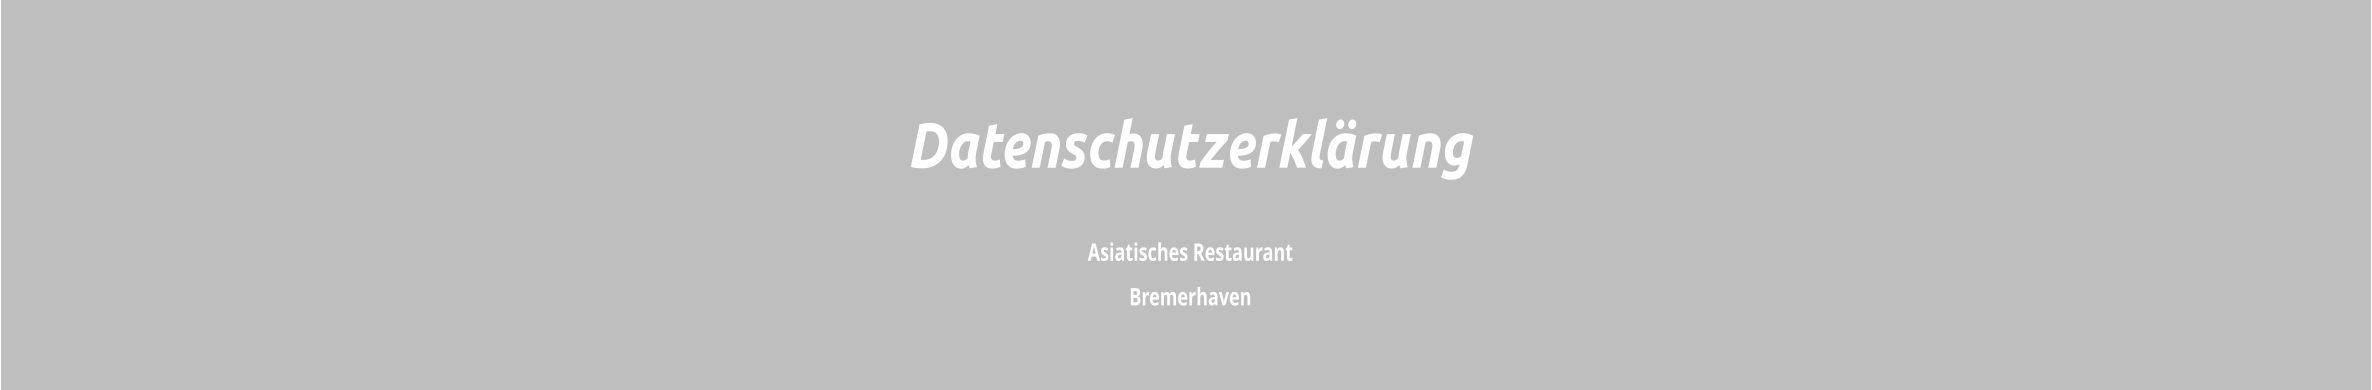 Asiatisches Restaurant  Bremerhaven Datenschutzerklärung